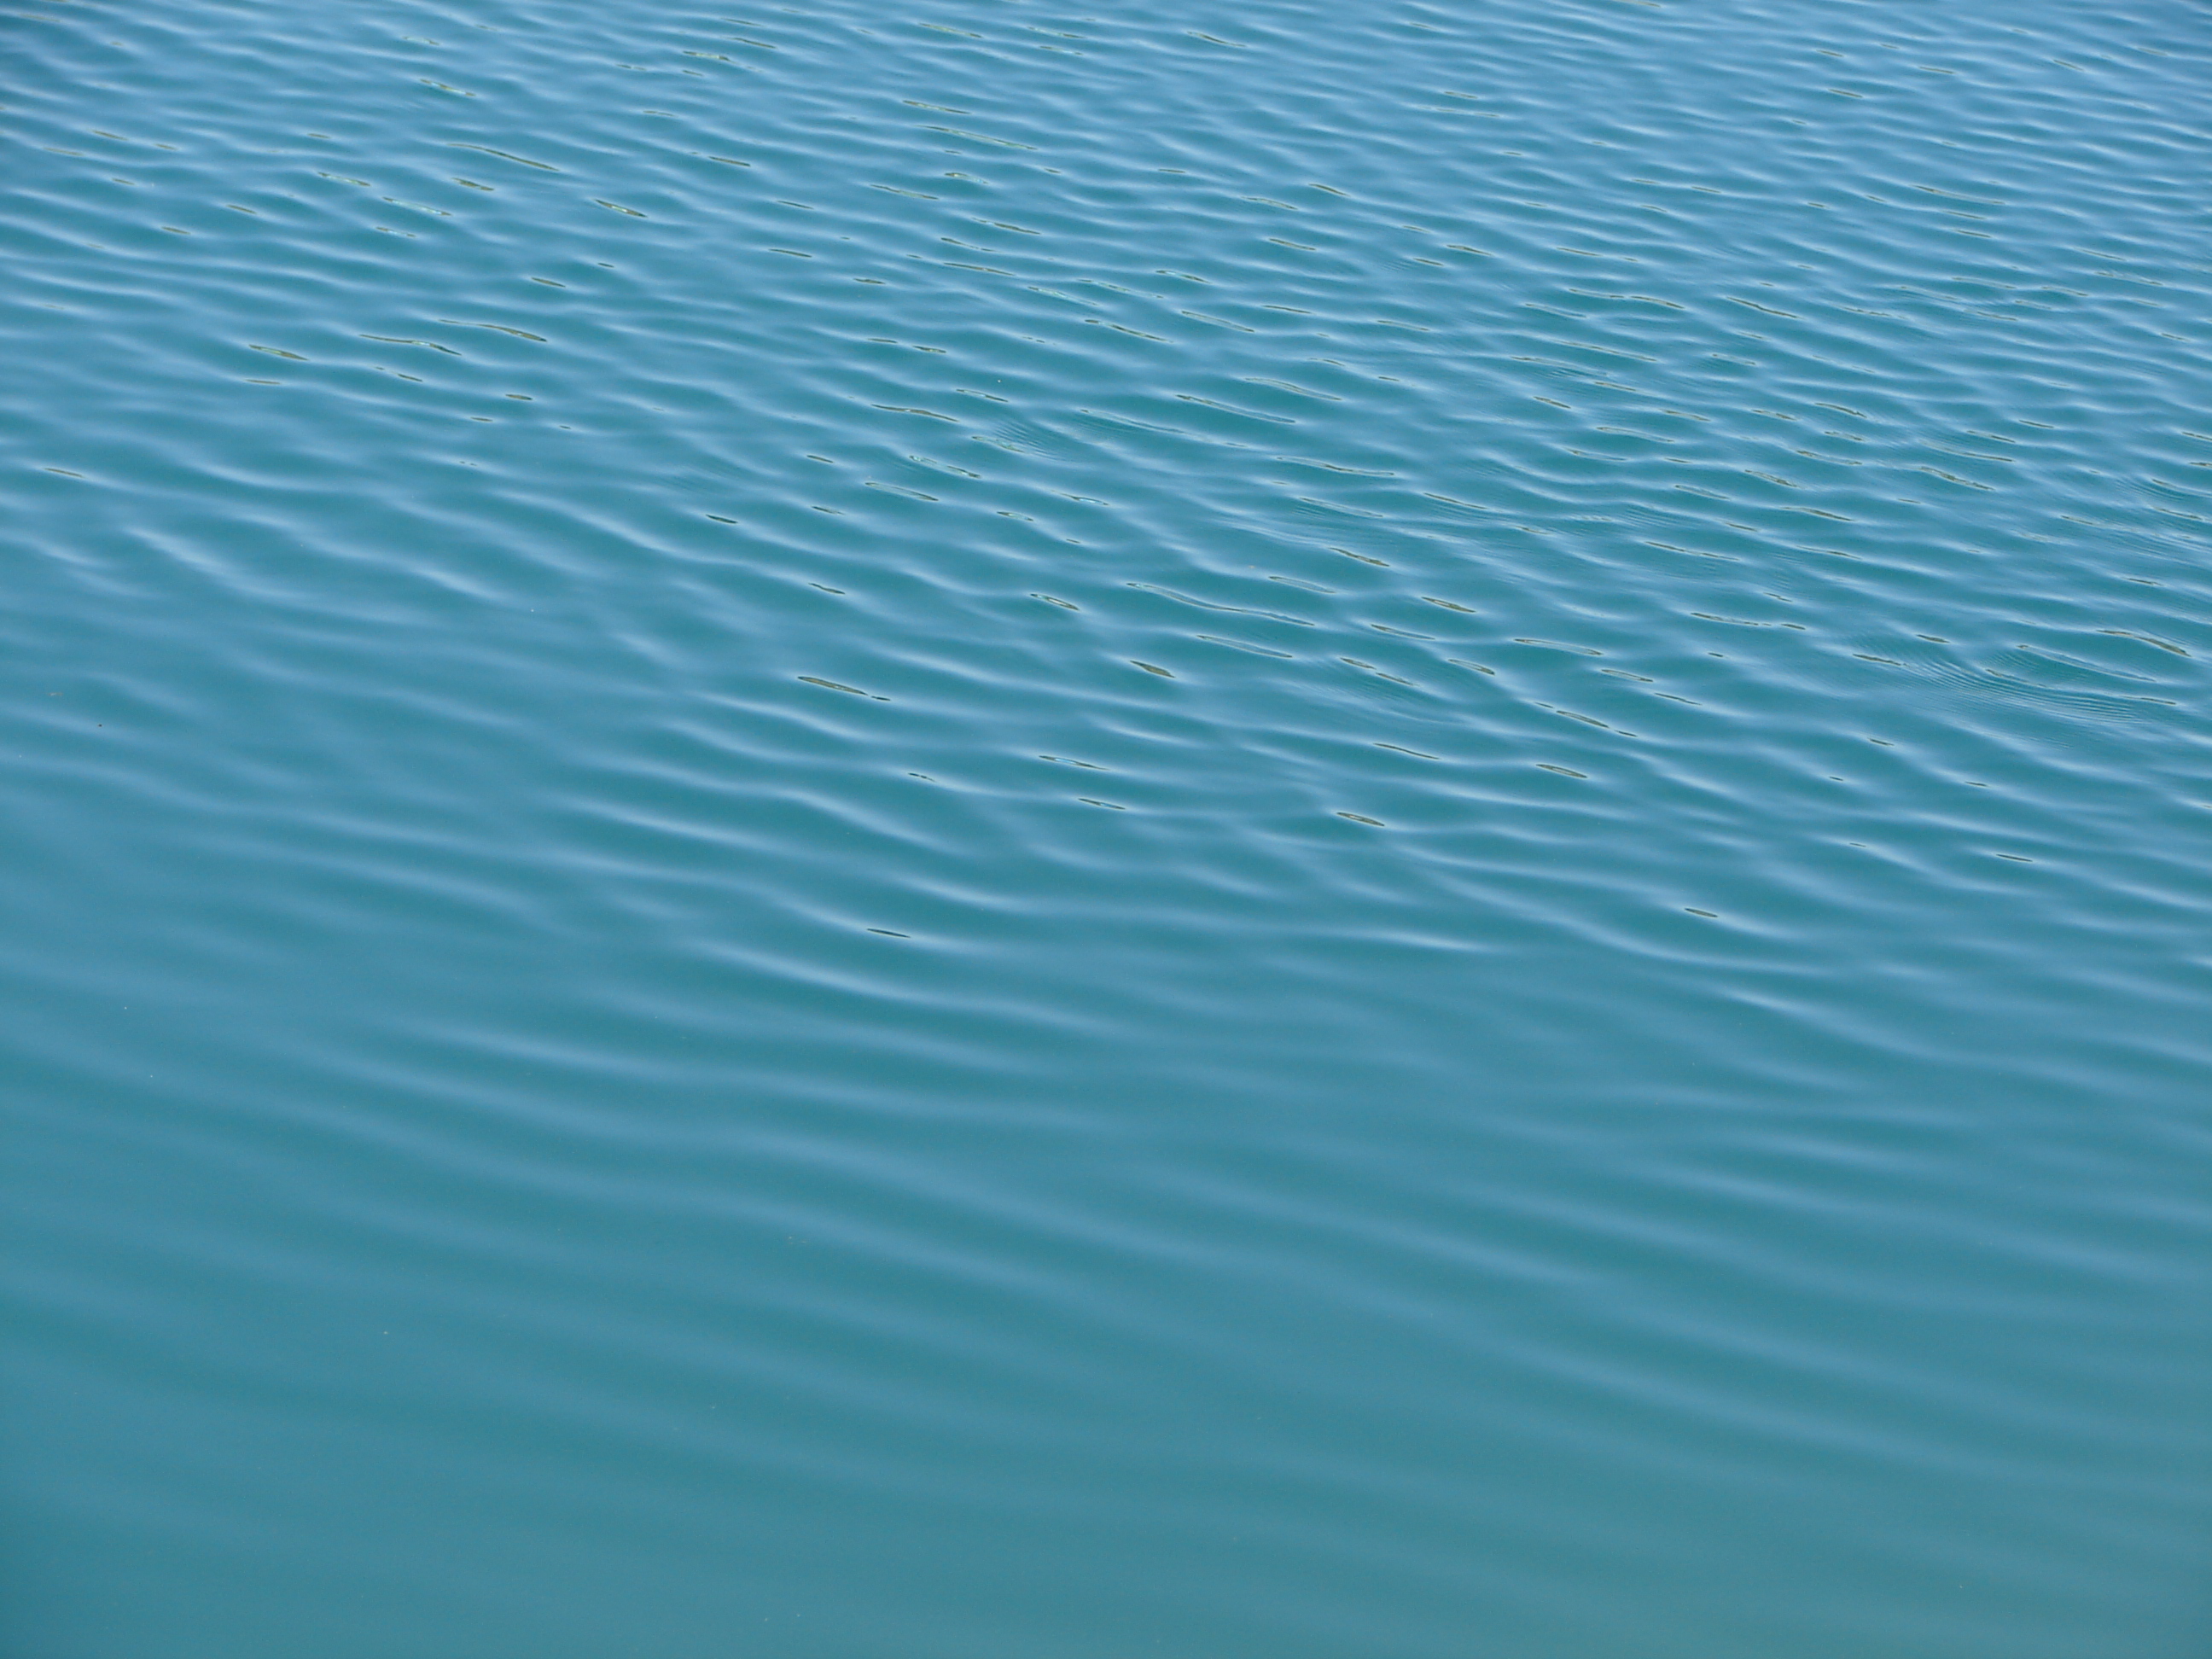 Скачать текстуру в высоком разрешении: текстура воды, вода, water texture,  скачать фото, фон, background